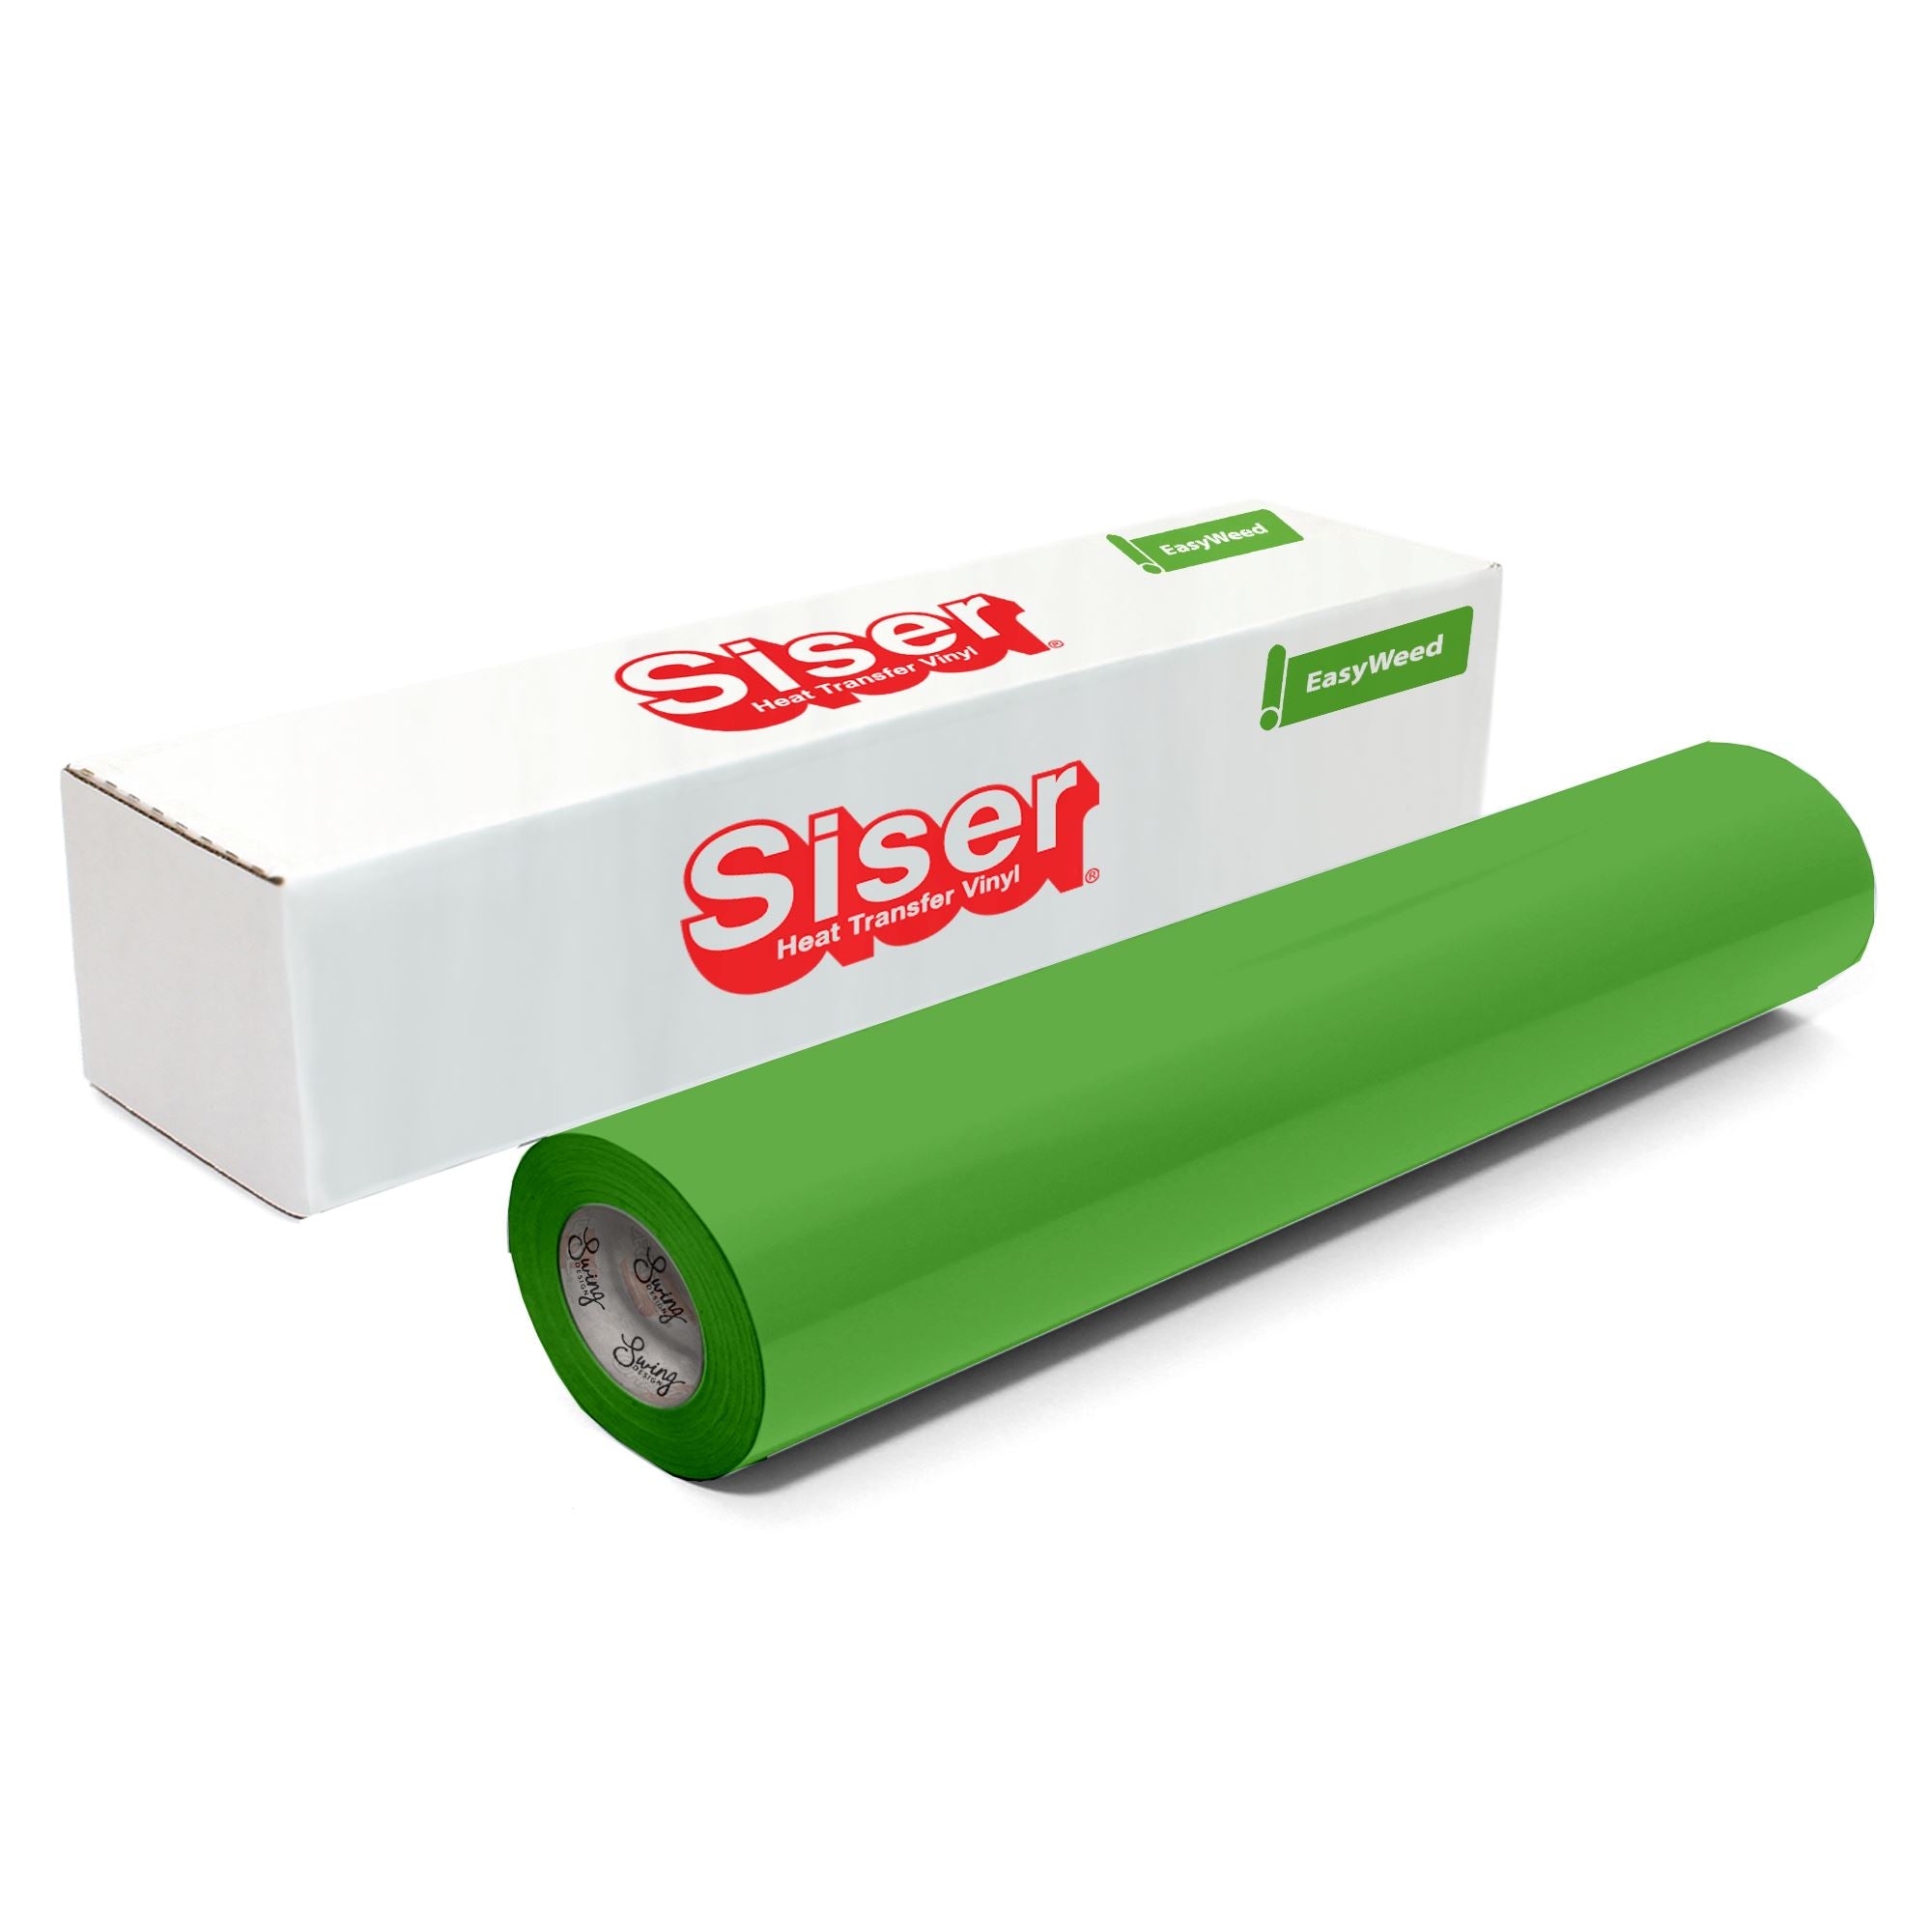  Siser EasyWeed HTV 11.8 x 3ft Roll (Fluorescent Green